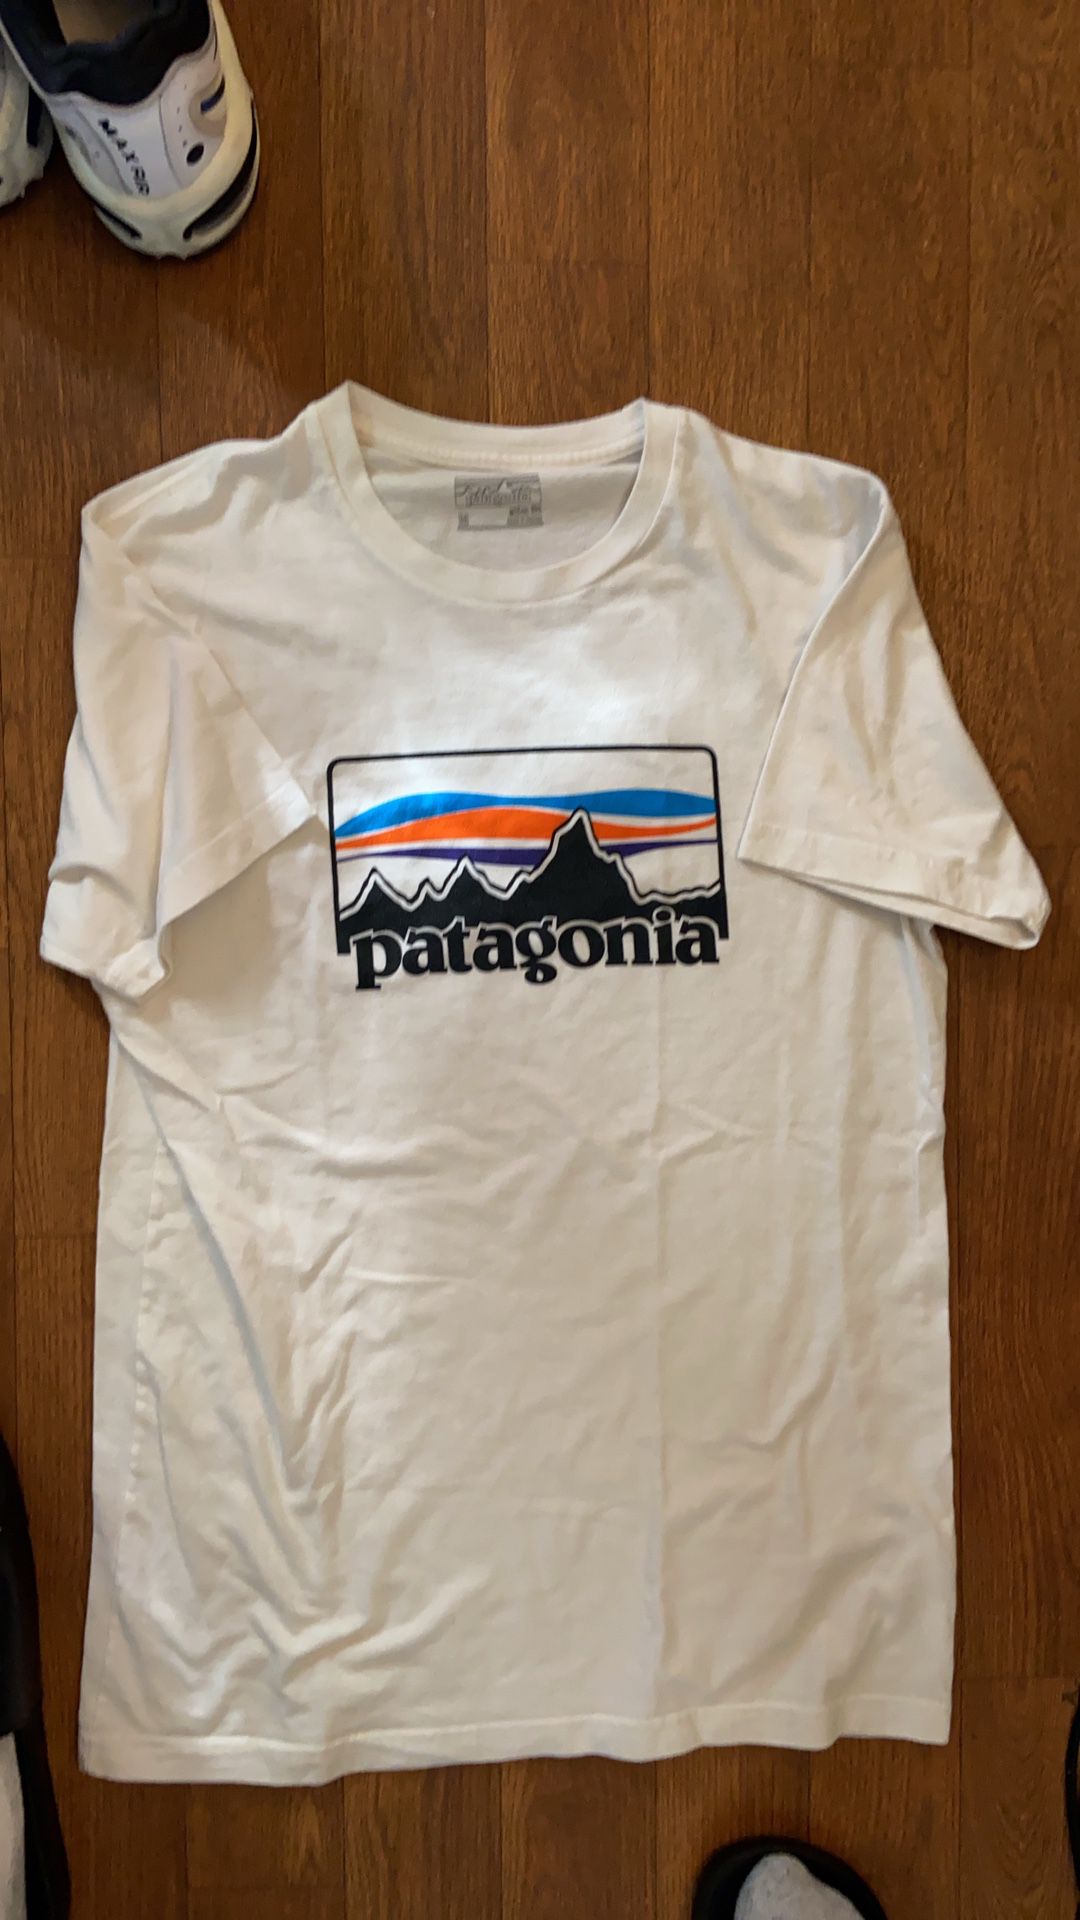 Patagonia tee size medium 40$